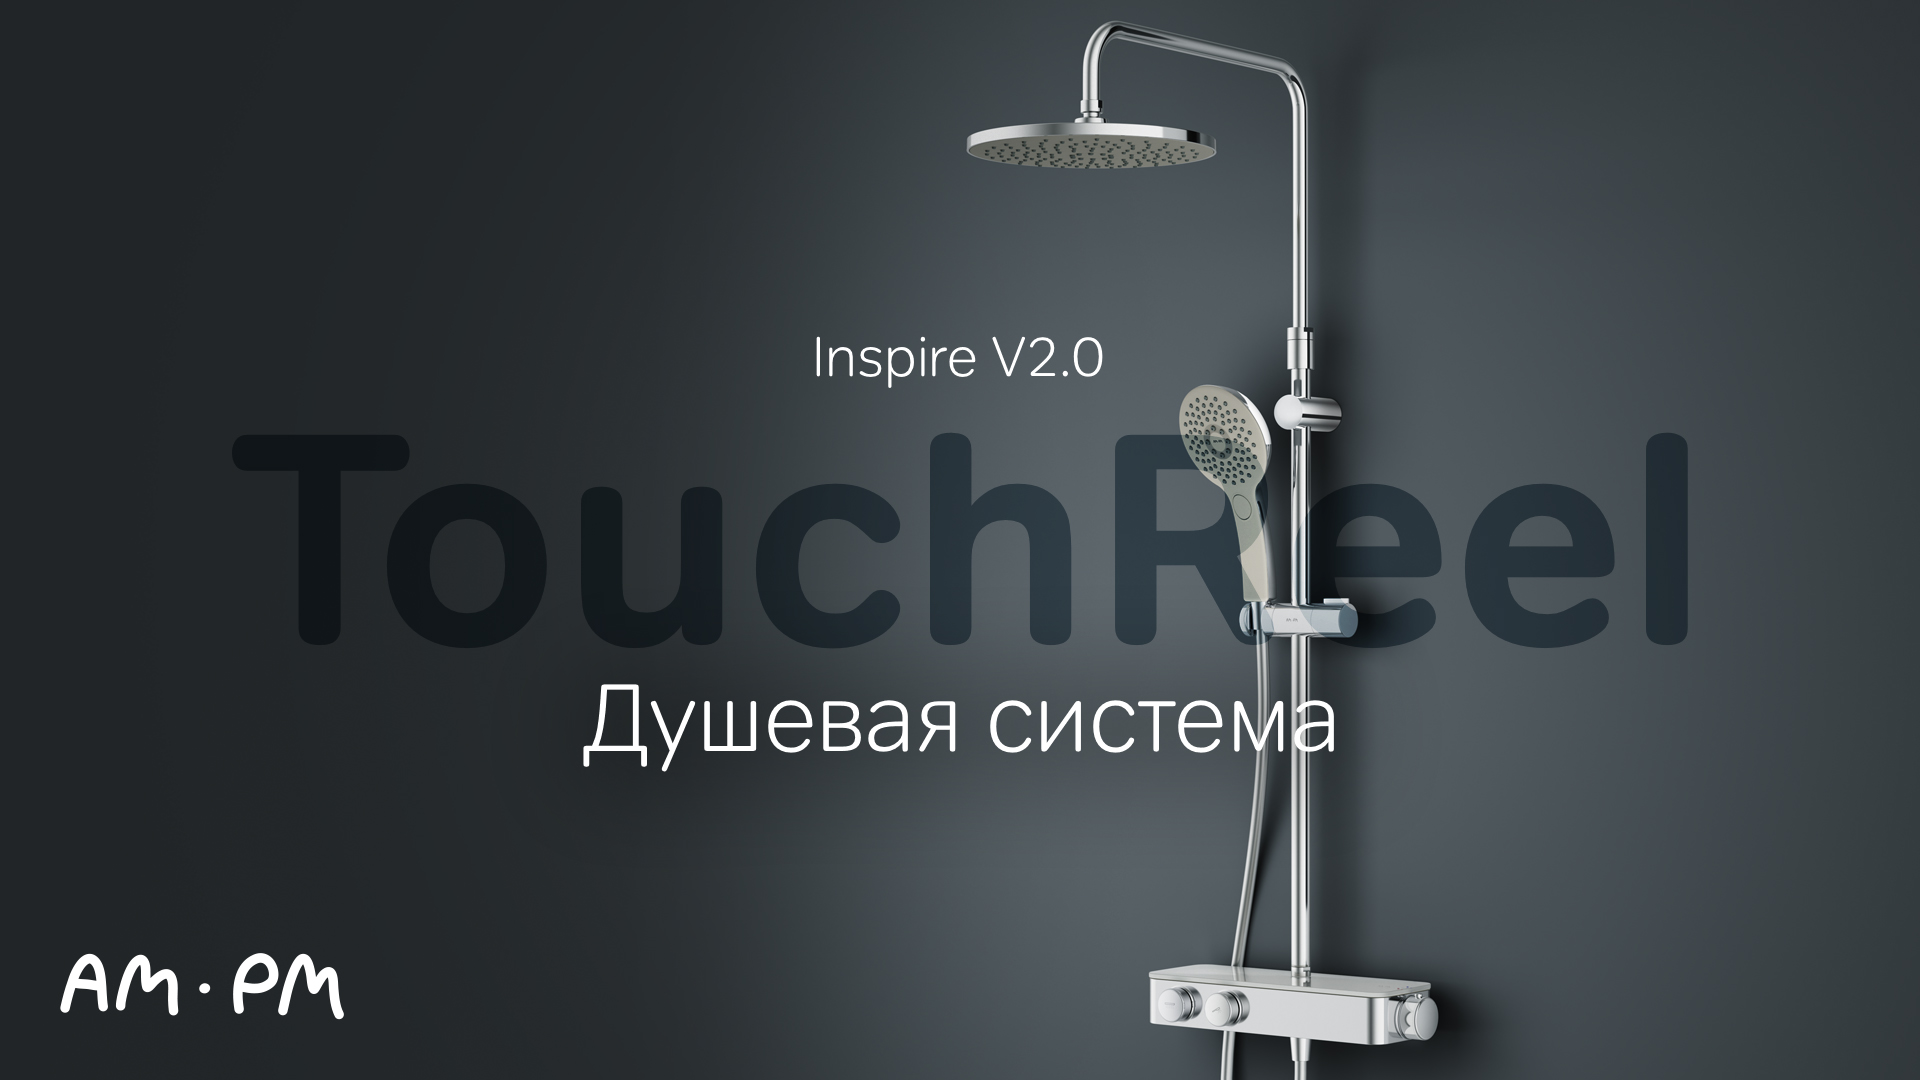 Inspire V2.0 Душевая система TouchReel.mp4